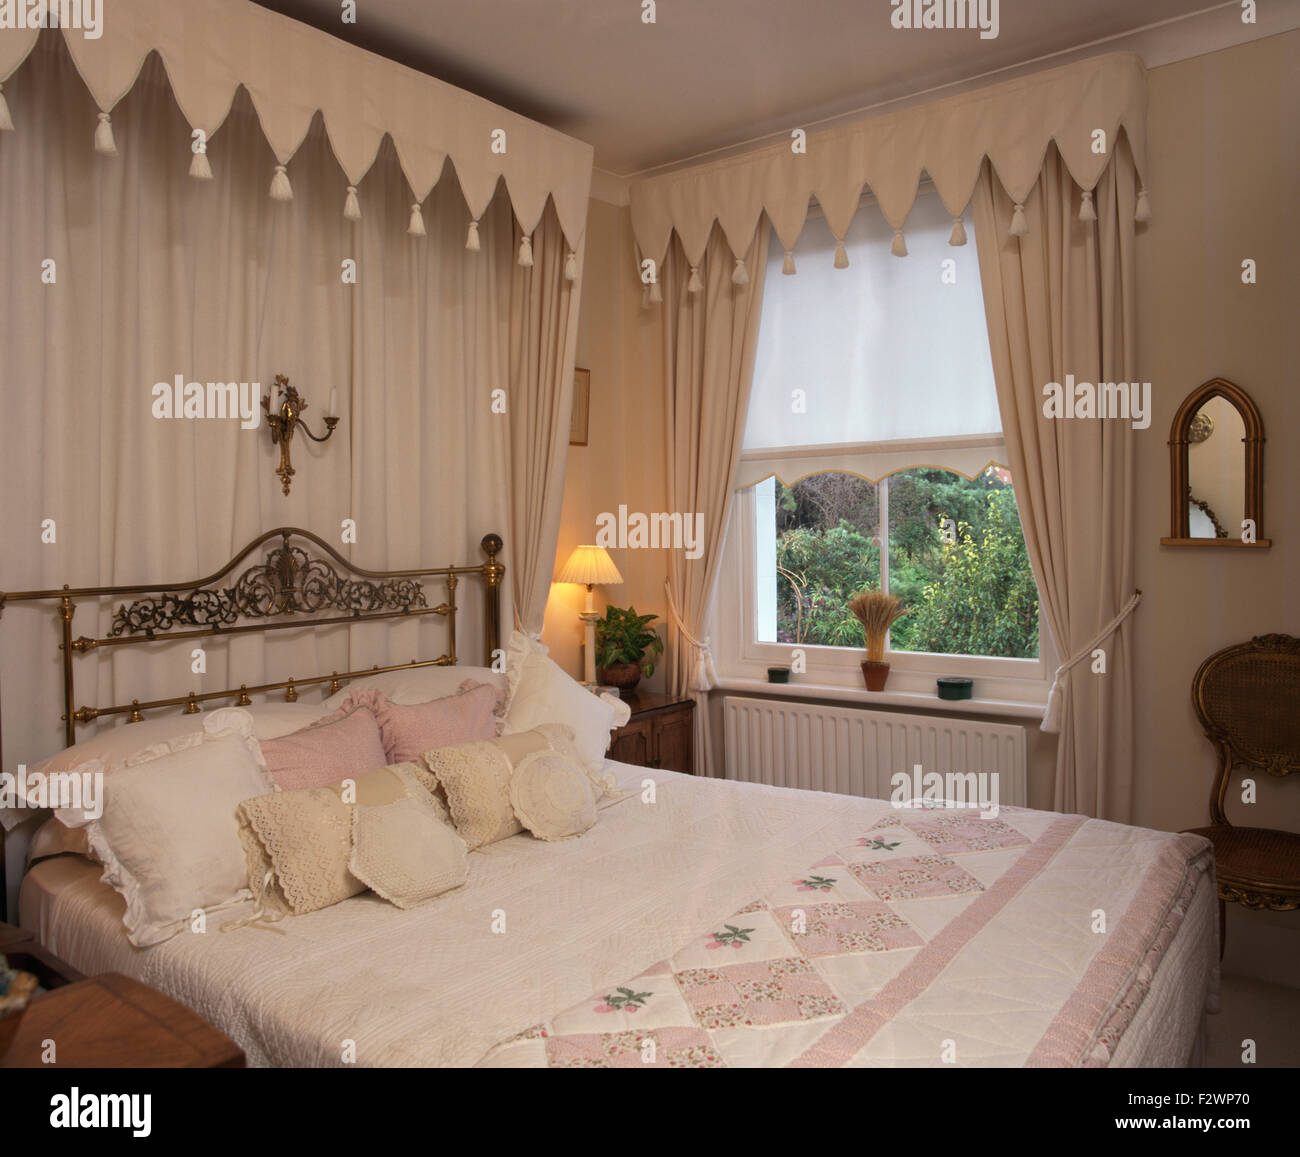 Dosel de estilo gótico y cortinas por encima de la cama de latón en la casa Dormitorio con cortinas color crema y pelmet Foto de stock